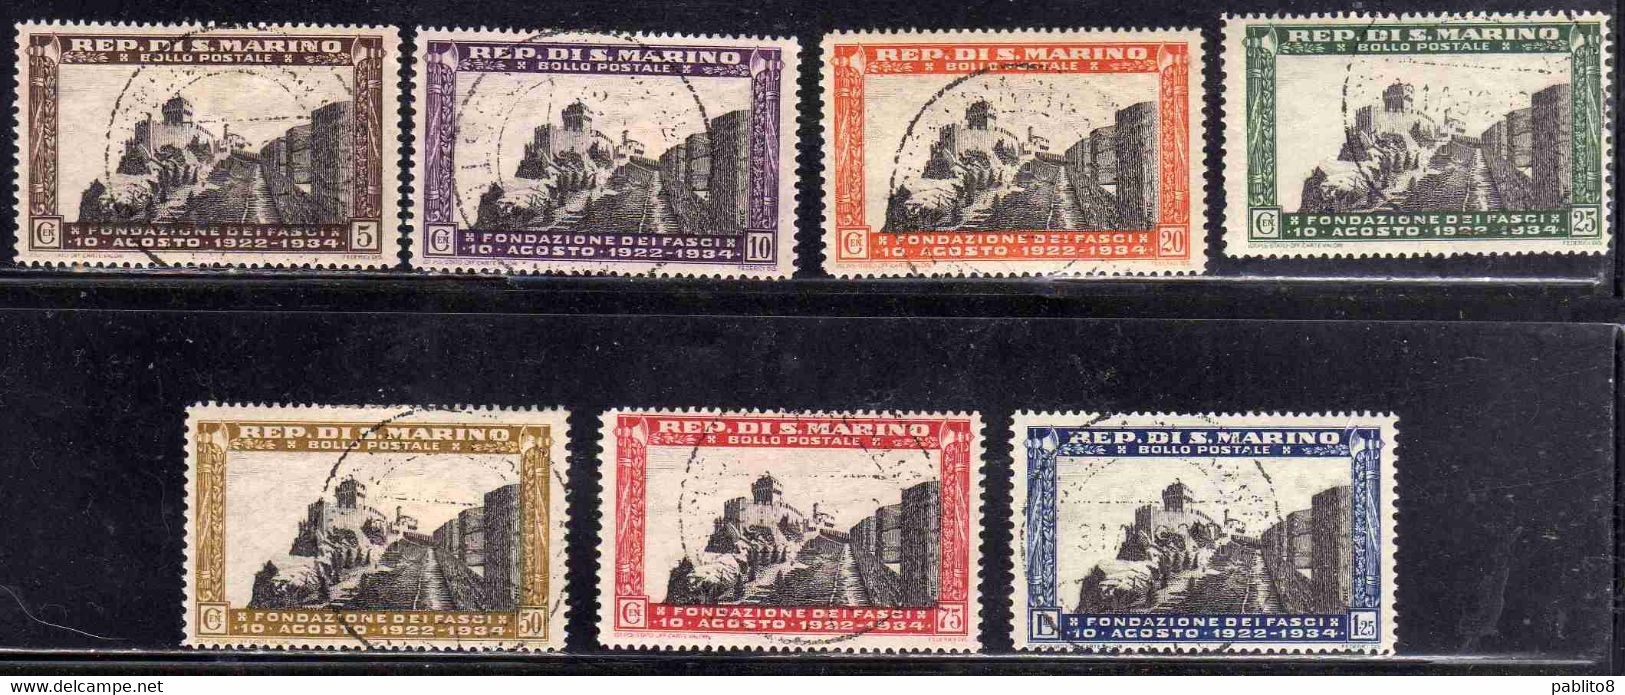 SAN MARINO 1935 ANNIVERSARIO 12 FONDAZIONE DEL FASCIO 12TH ANNIVERSARY FASCISM FOUNDATION SERIE COMPLETA USATA USED - Used Stamps